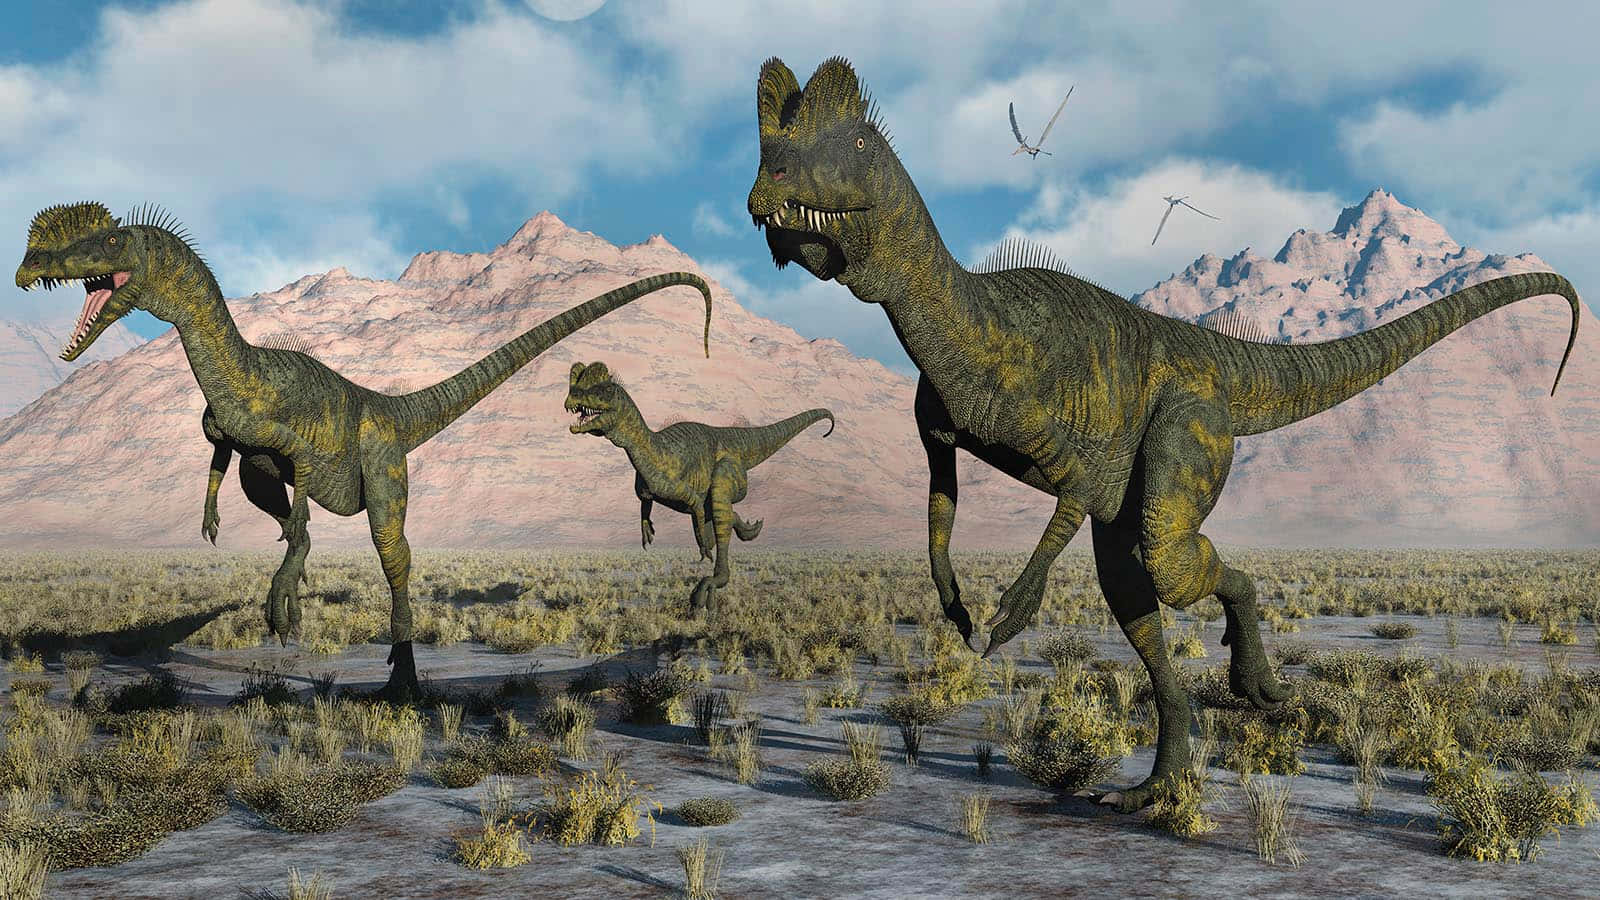 Einegruppe Von Dinosauriern Läuft Durch Die Wüste.